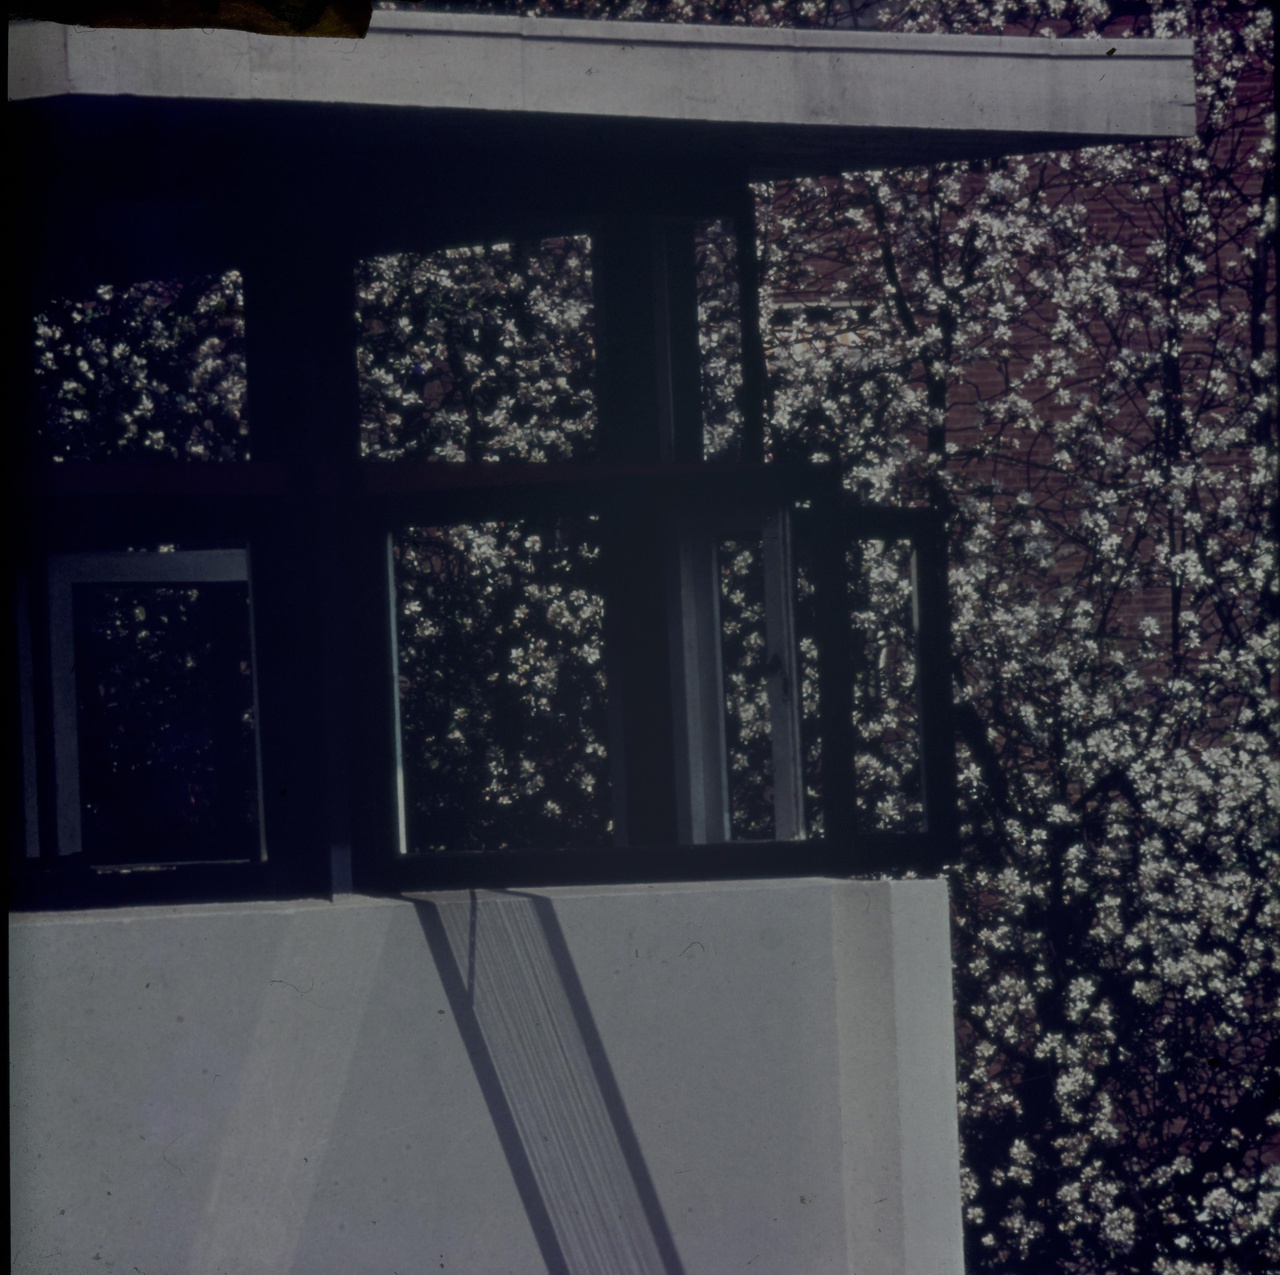 Afbeelding van Rietveld Schröderhuis - open hoekraam met bloesem-achtergrond